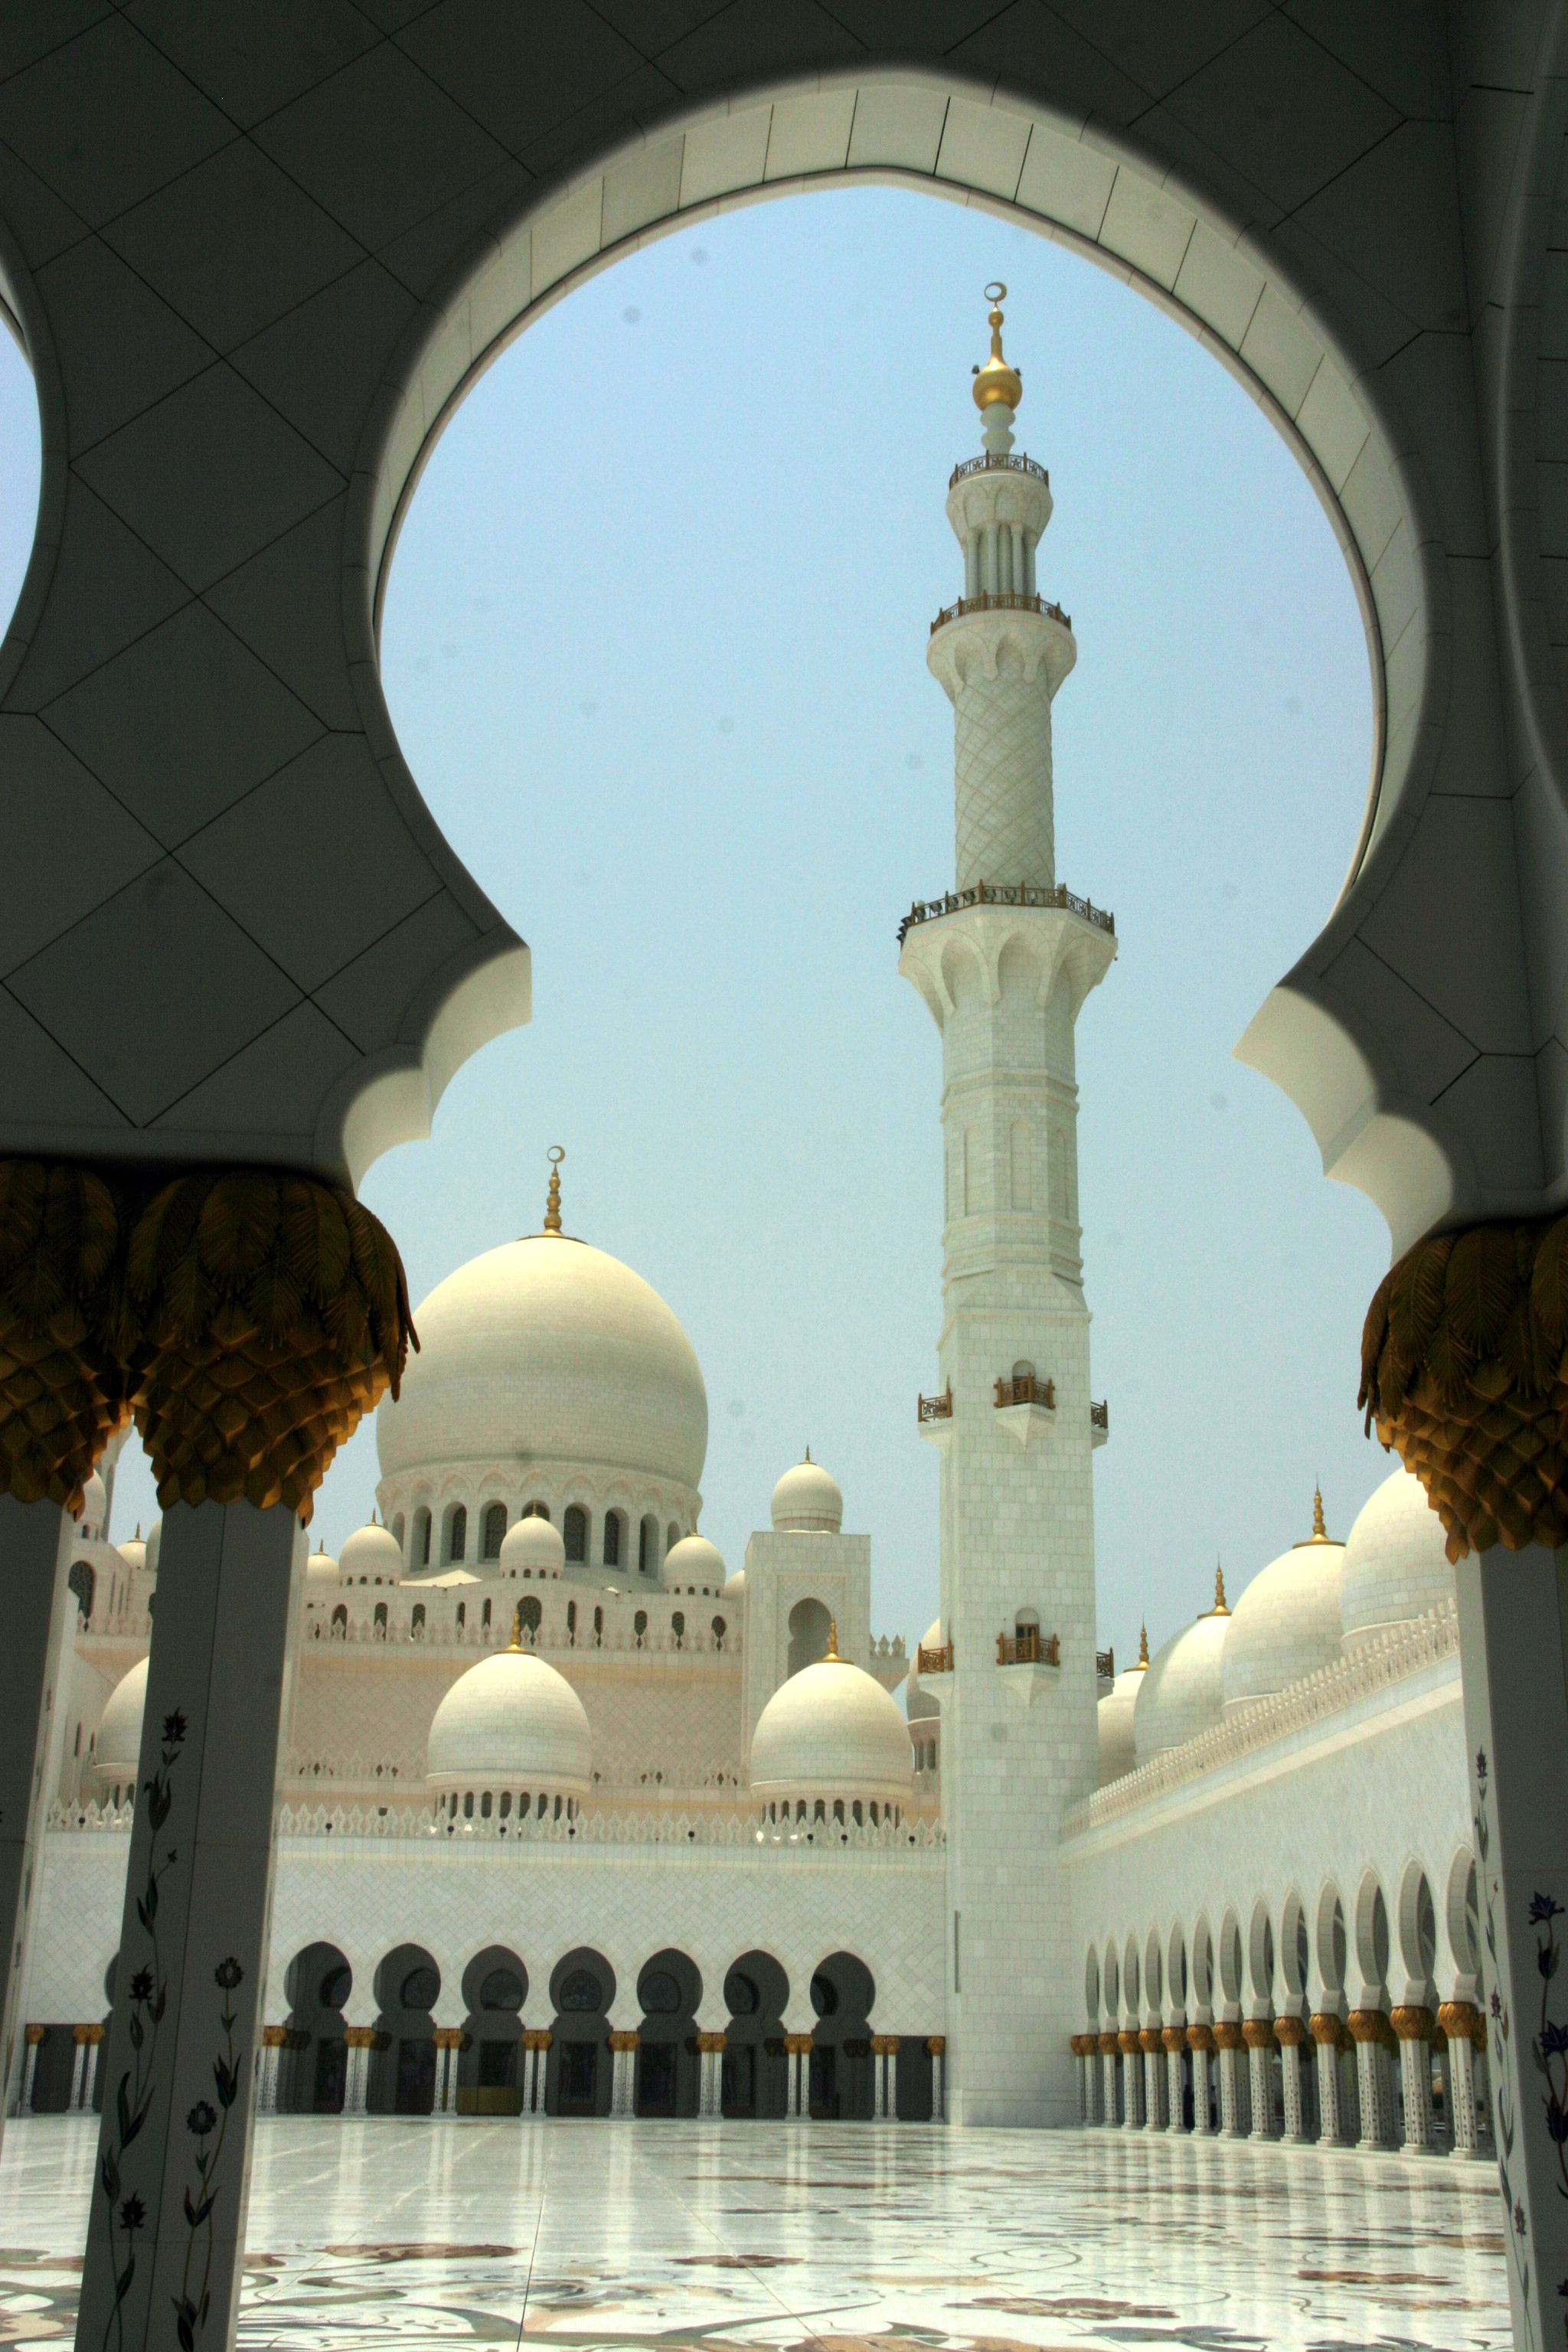 Sheik Zayed Nagymecset a világ legnagyobb mecsete volt amikor felépült (azóta már csak a 6. legnagyobb), a világ legnagyobb Swarovski csilláraival, és itt van a világ legnagyobb perzsa szőnyege